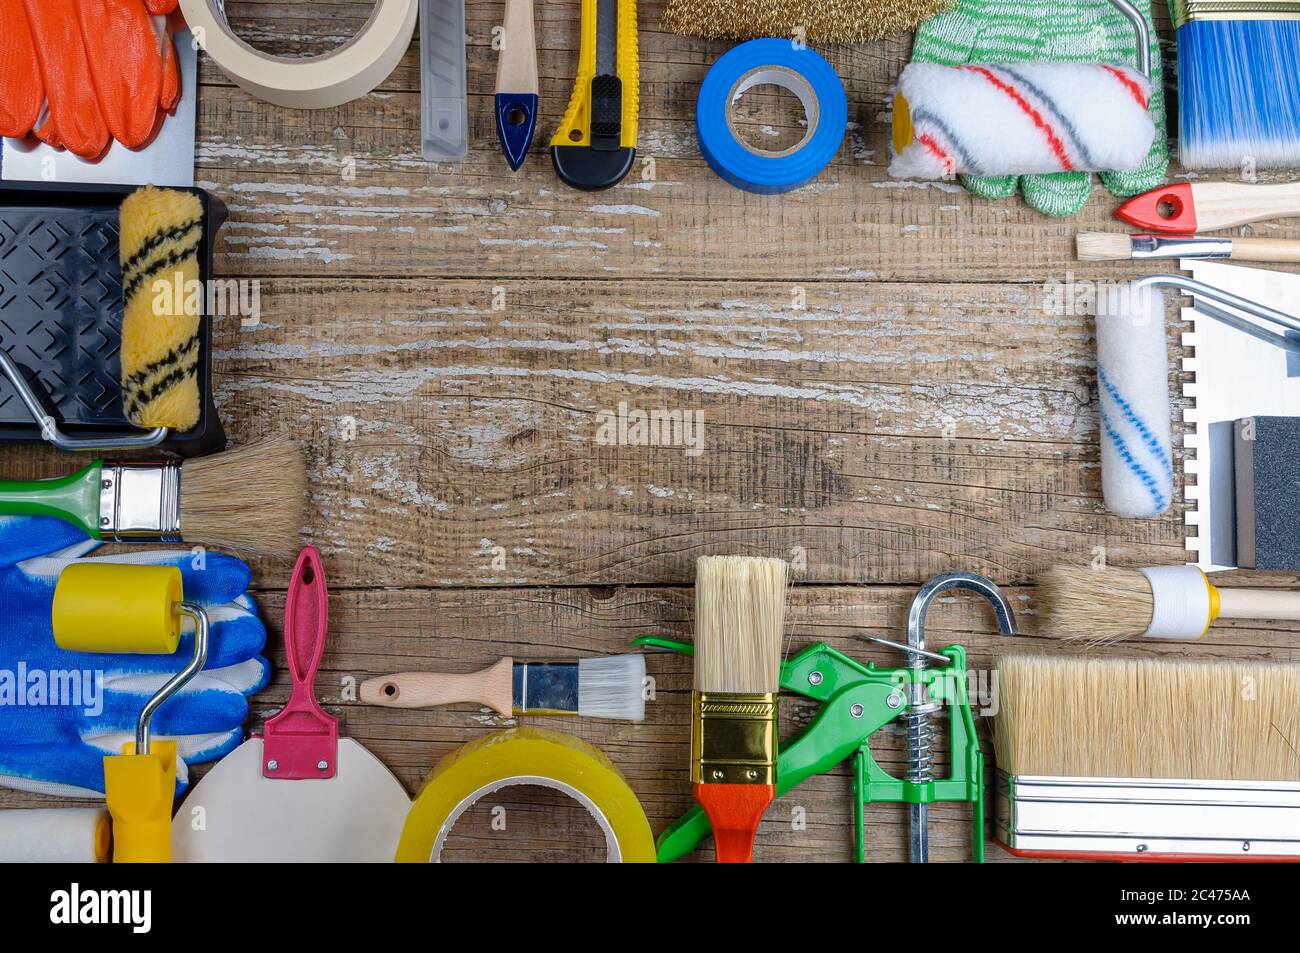 Haus Maler Werkzeug auf Holzhintergrund.Reparatur Werkzeug Stockfotografie  - Alamy